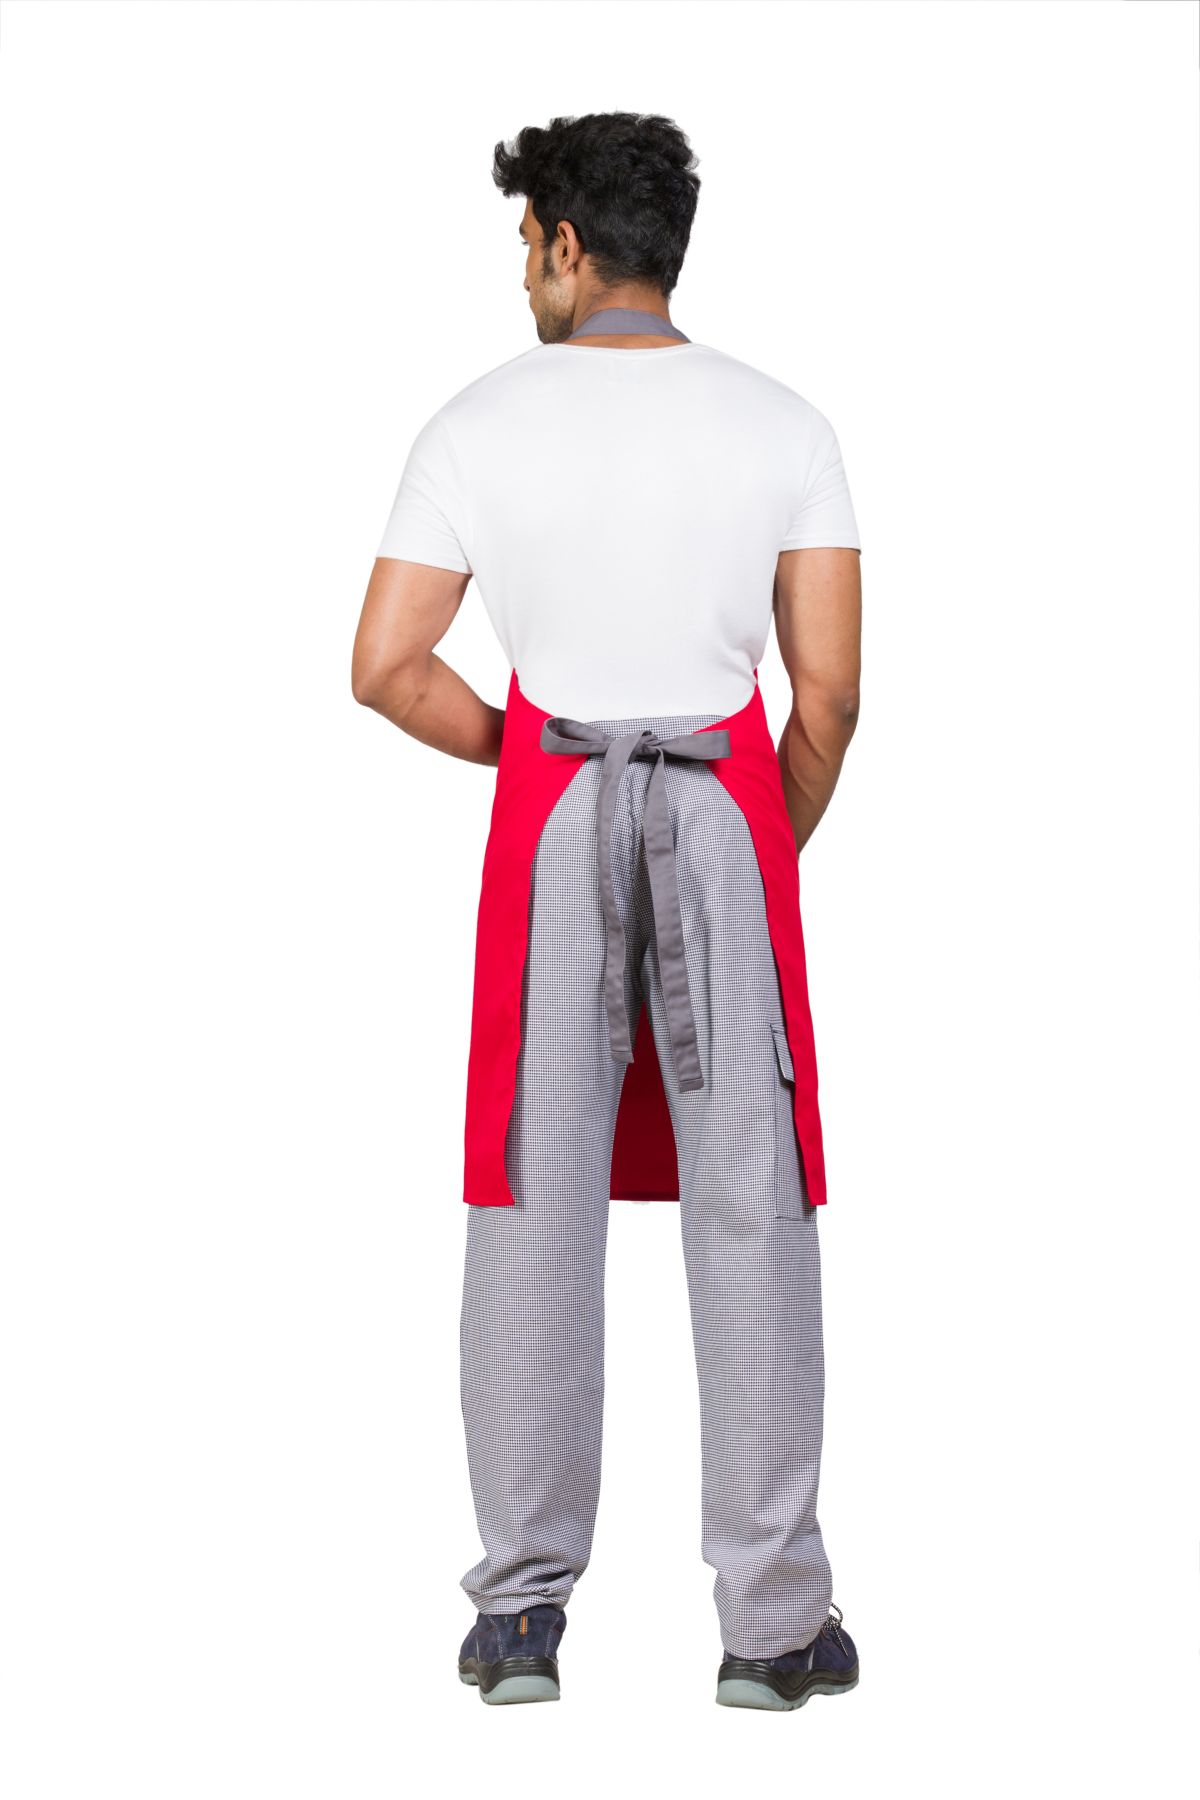 Cotton Blend Easy Fit Adjustable Ergonomic Front Pocket Red-Grey Full Apron